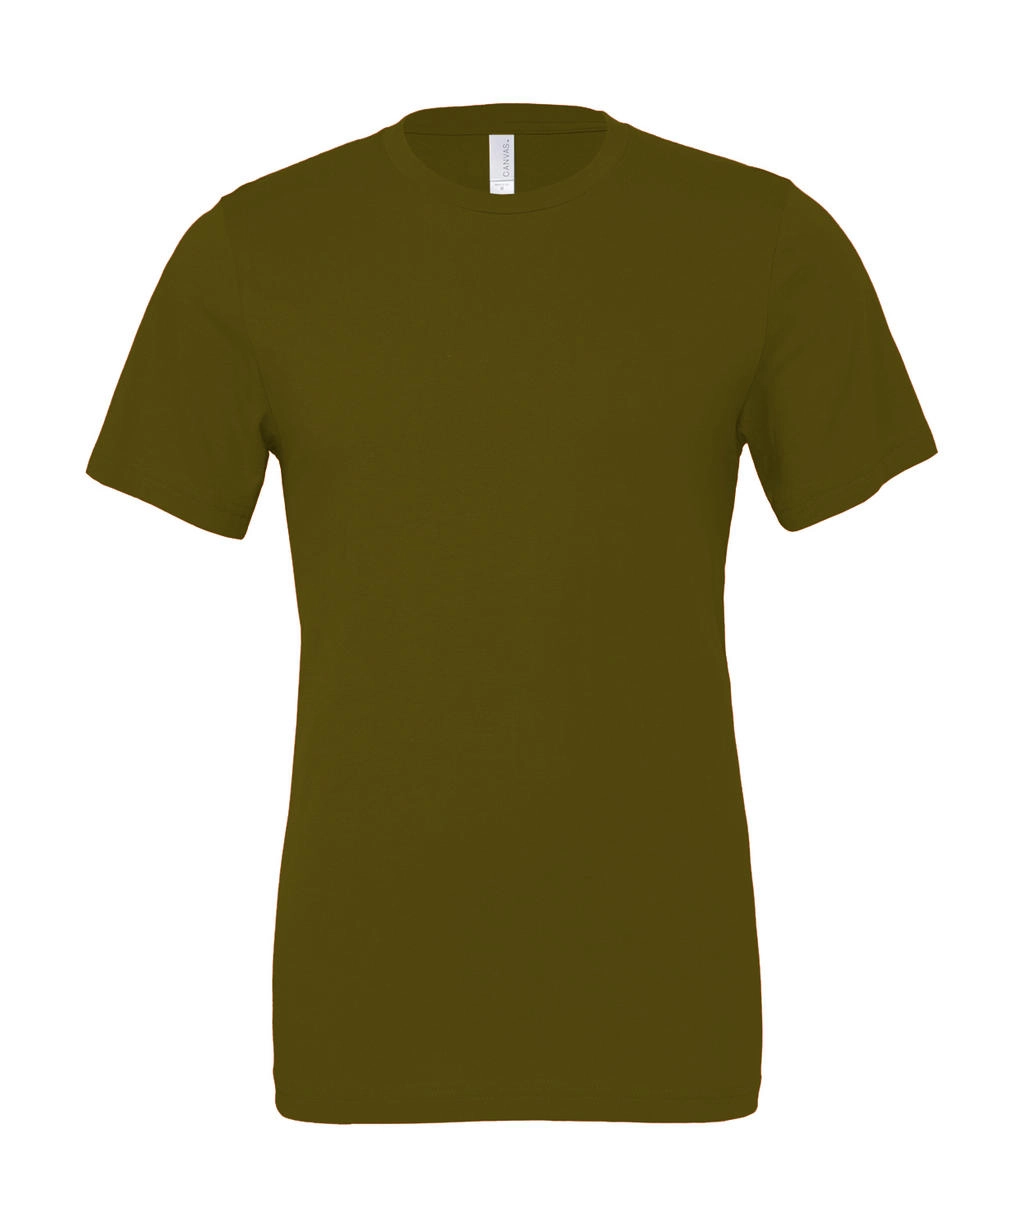 Unisex Jersey Short Sleeve Tee zum Besticken und Bedrucken in der Farbe Army mit Ihren Logo, Schriftzug oder Motiv.